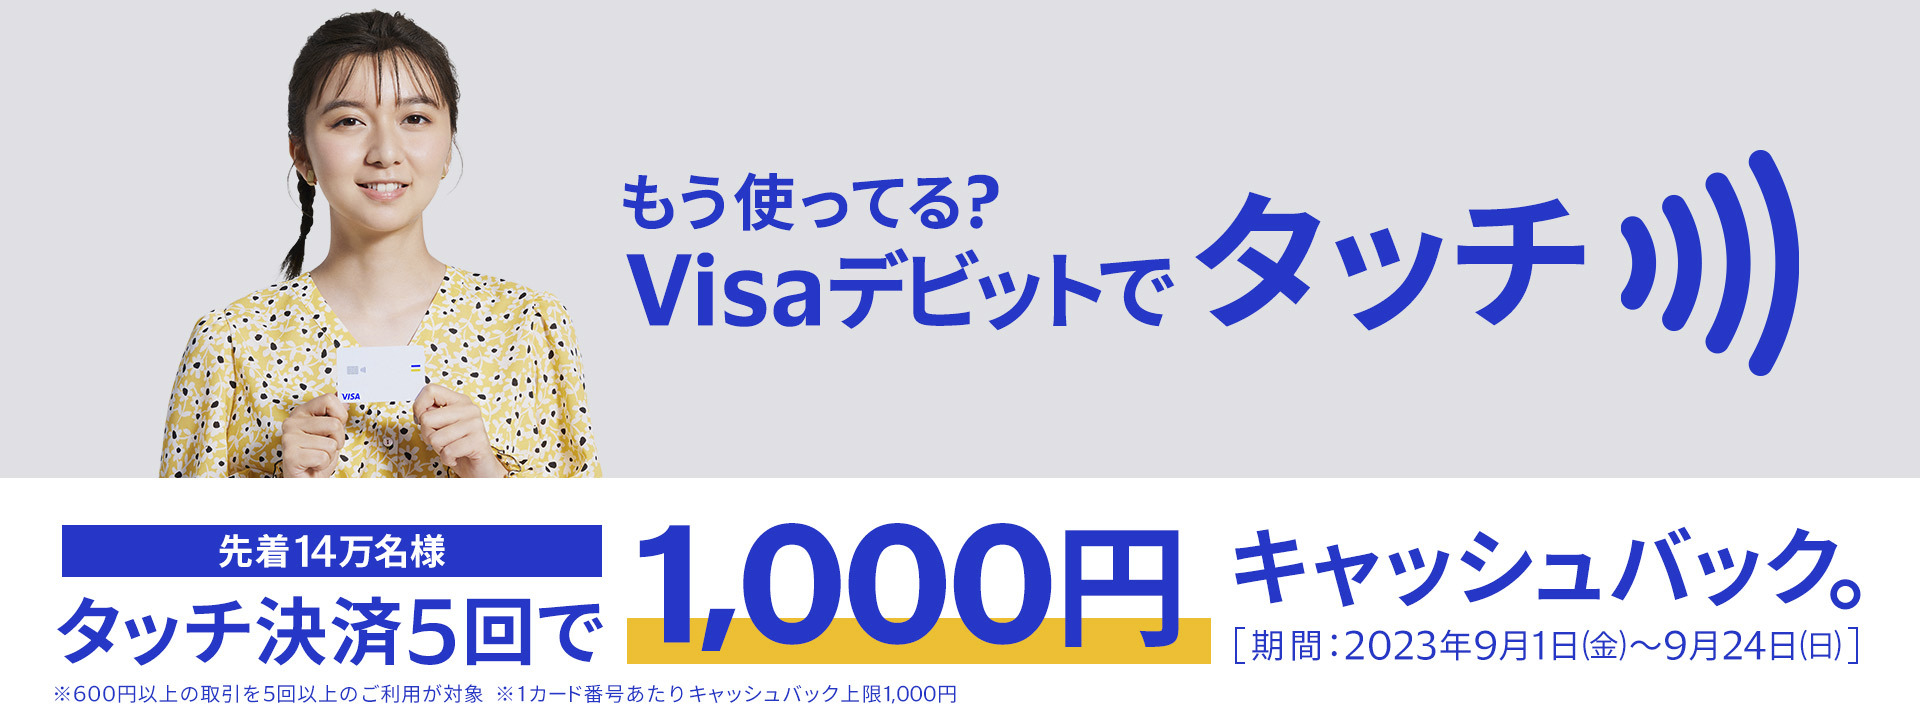 しばらく使ってない銀行デビットカードがあるなら「Visaデビットで タッチ決済5回で1,000円キャッシュバック」キャンペーン